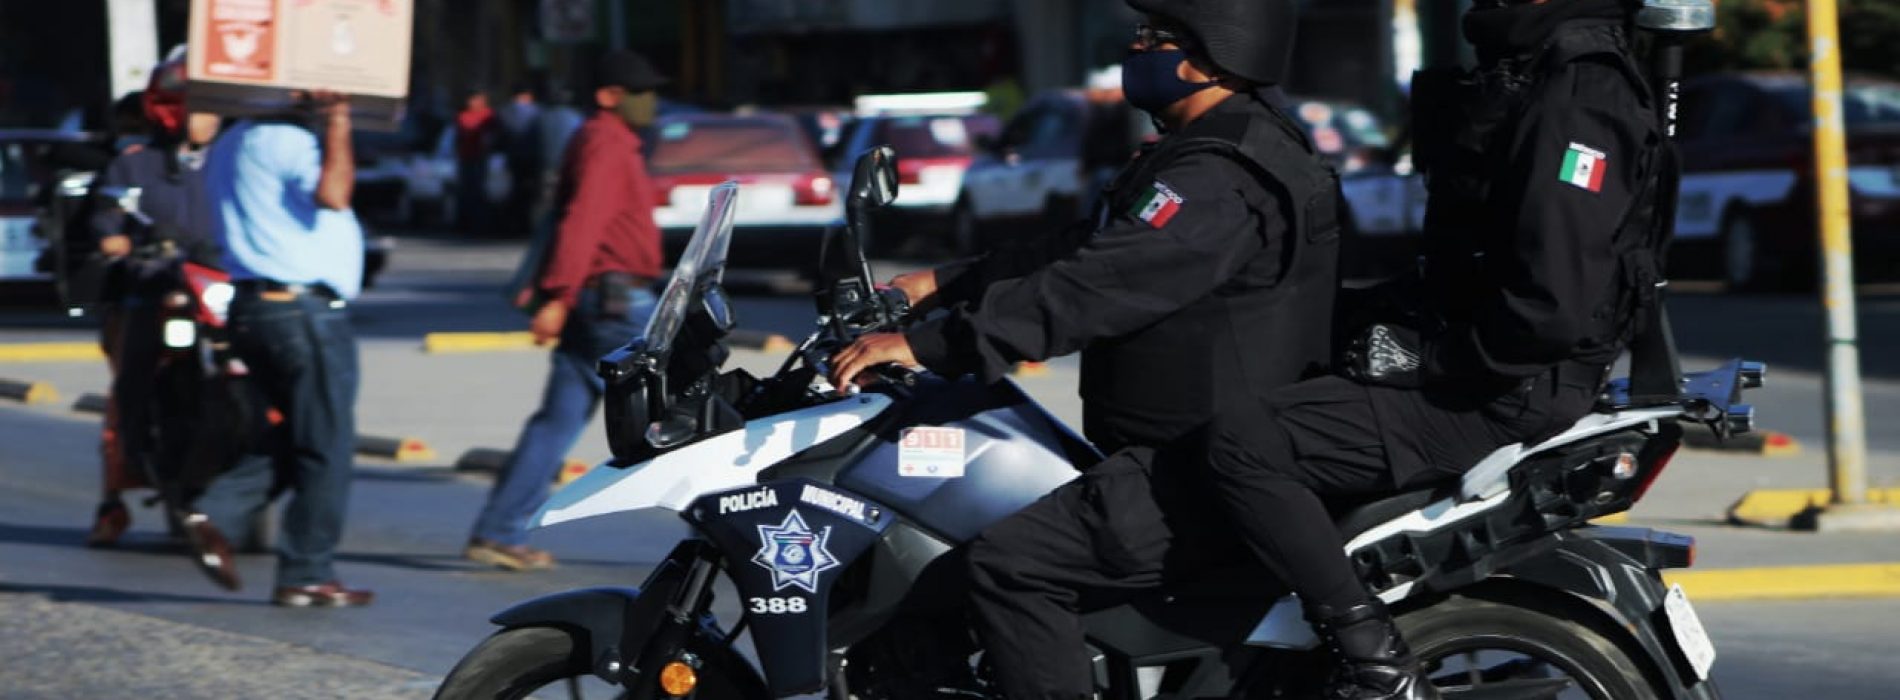 Tras festividad navideña, seguridad pública de Oaxaca de Juárez reporta saldo blanco